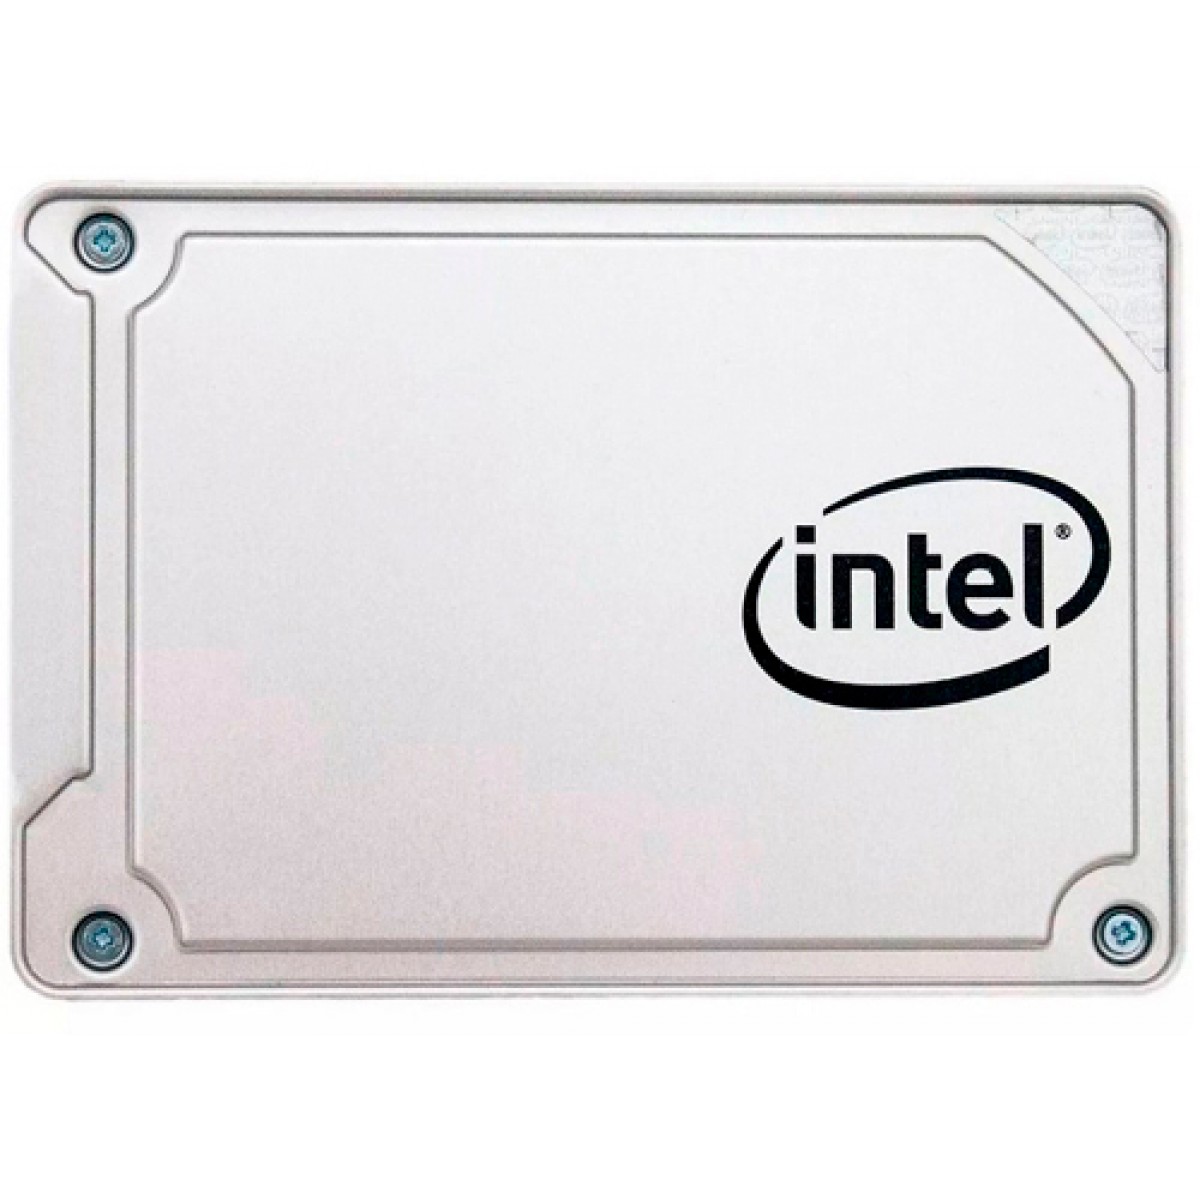 SSD Intel Serie 545s 256GB SATA 6GB/S Leitura 550MB/s e Gravação 500MB/s, SSDSC2KW256G8X1